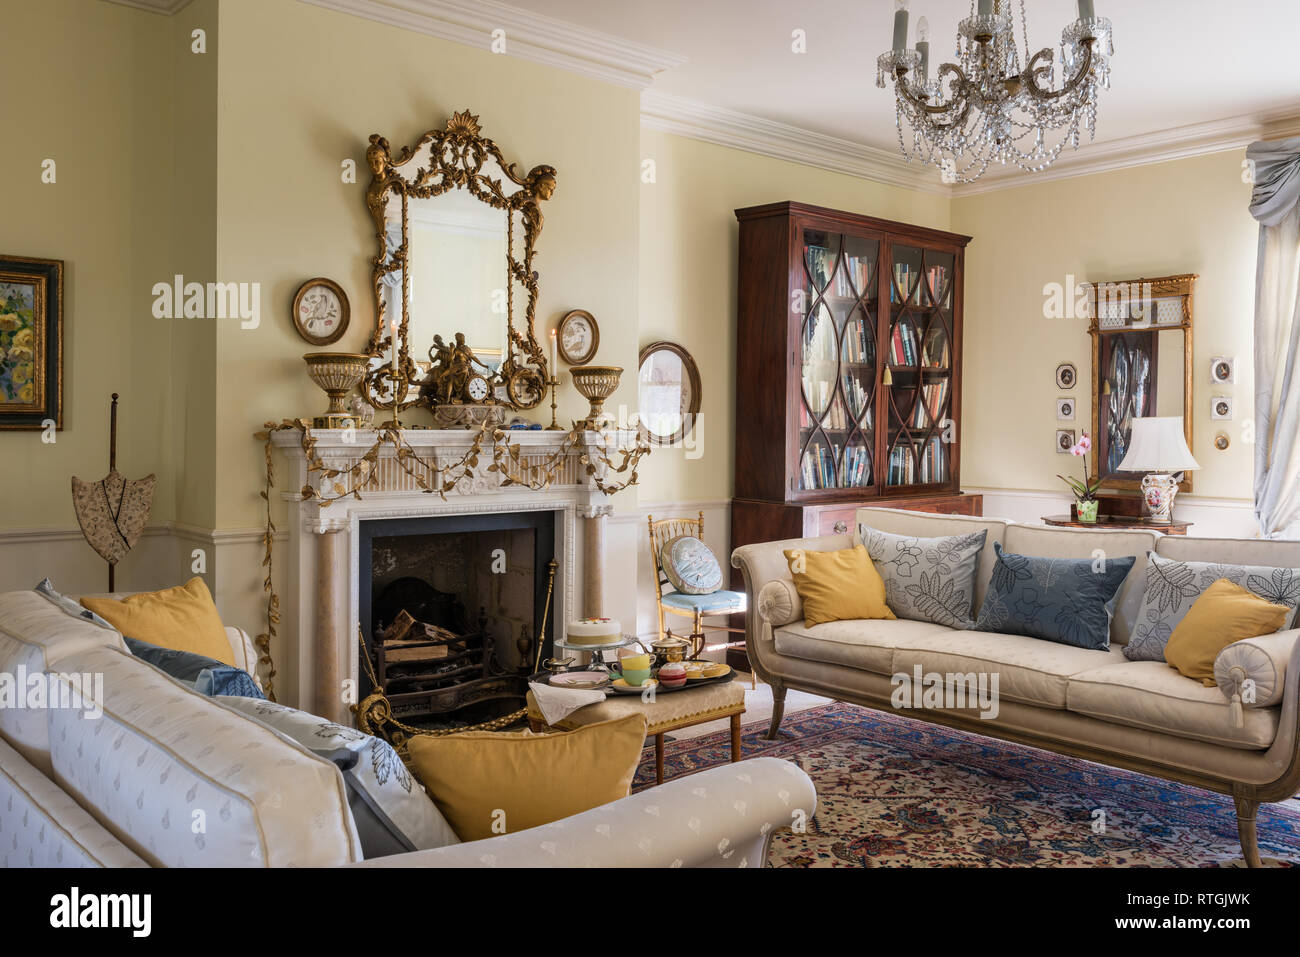 Tappeto orientale con stile regency divani e foglia oro garland sul camino inglese Foto Stock